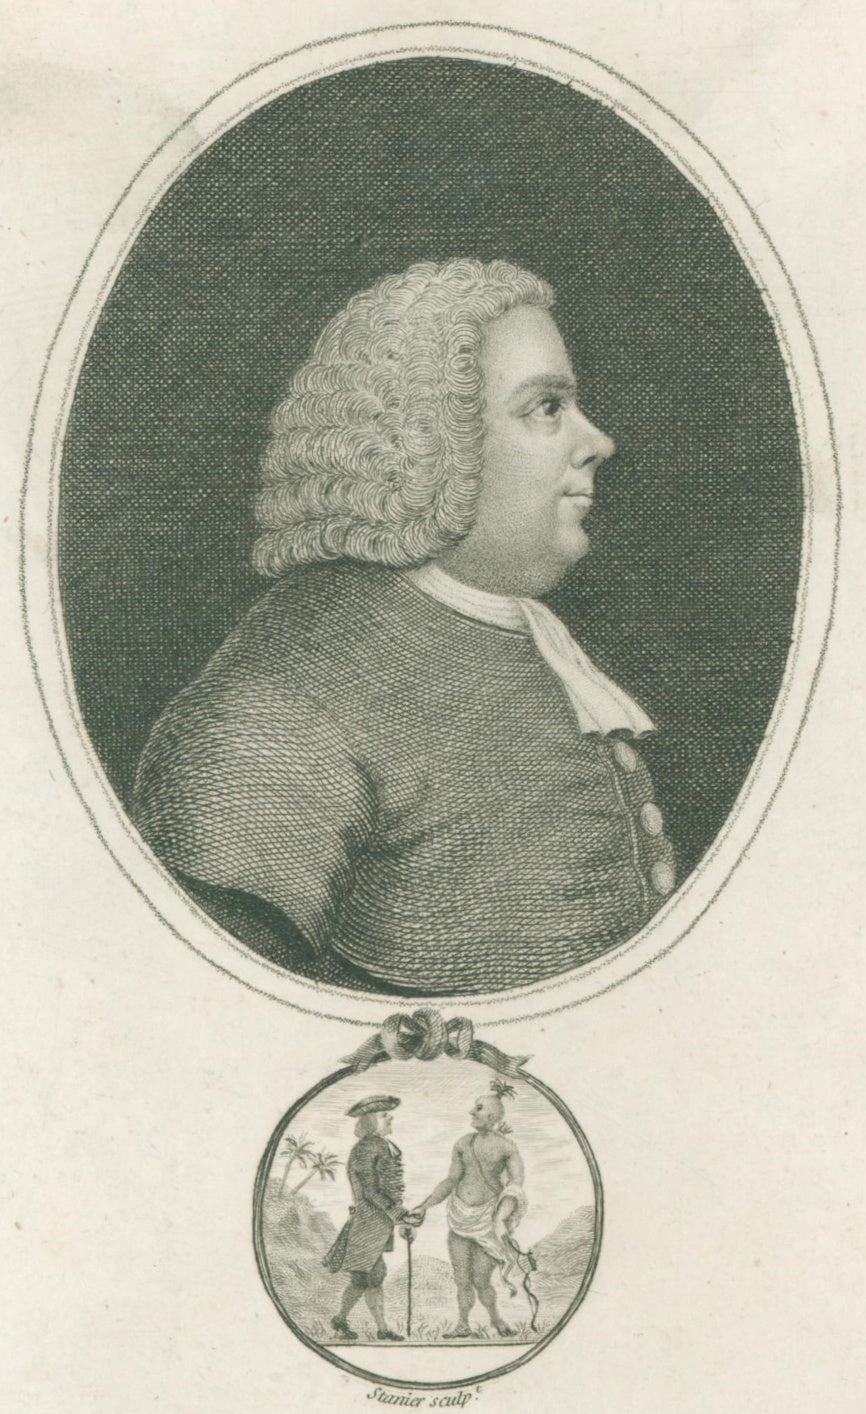 Du Simitière, Pierre Eugène “William Penn